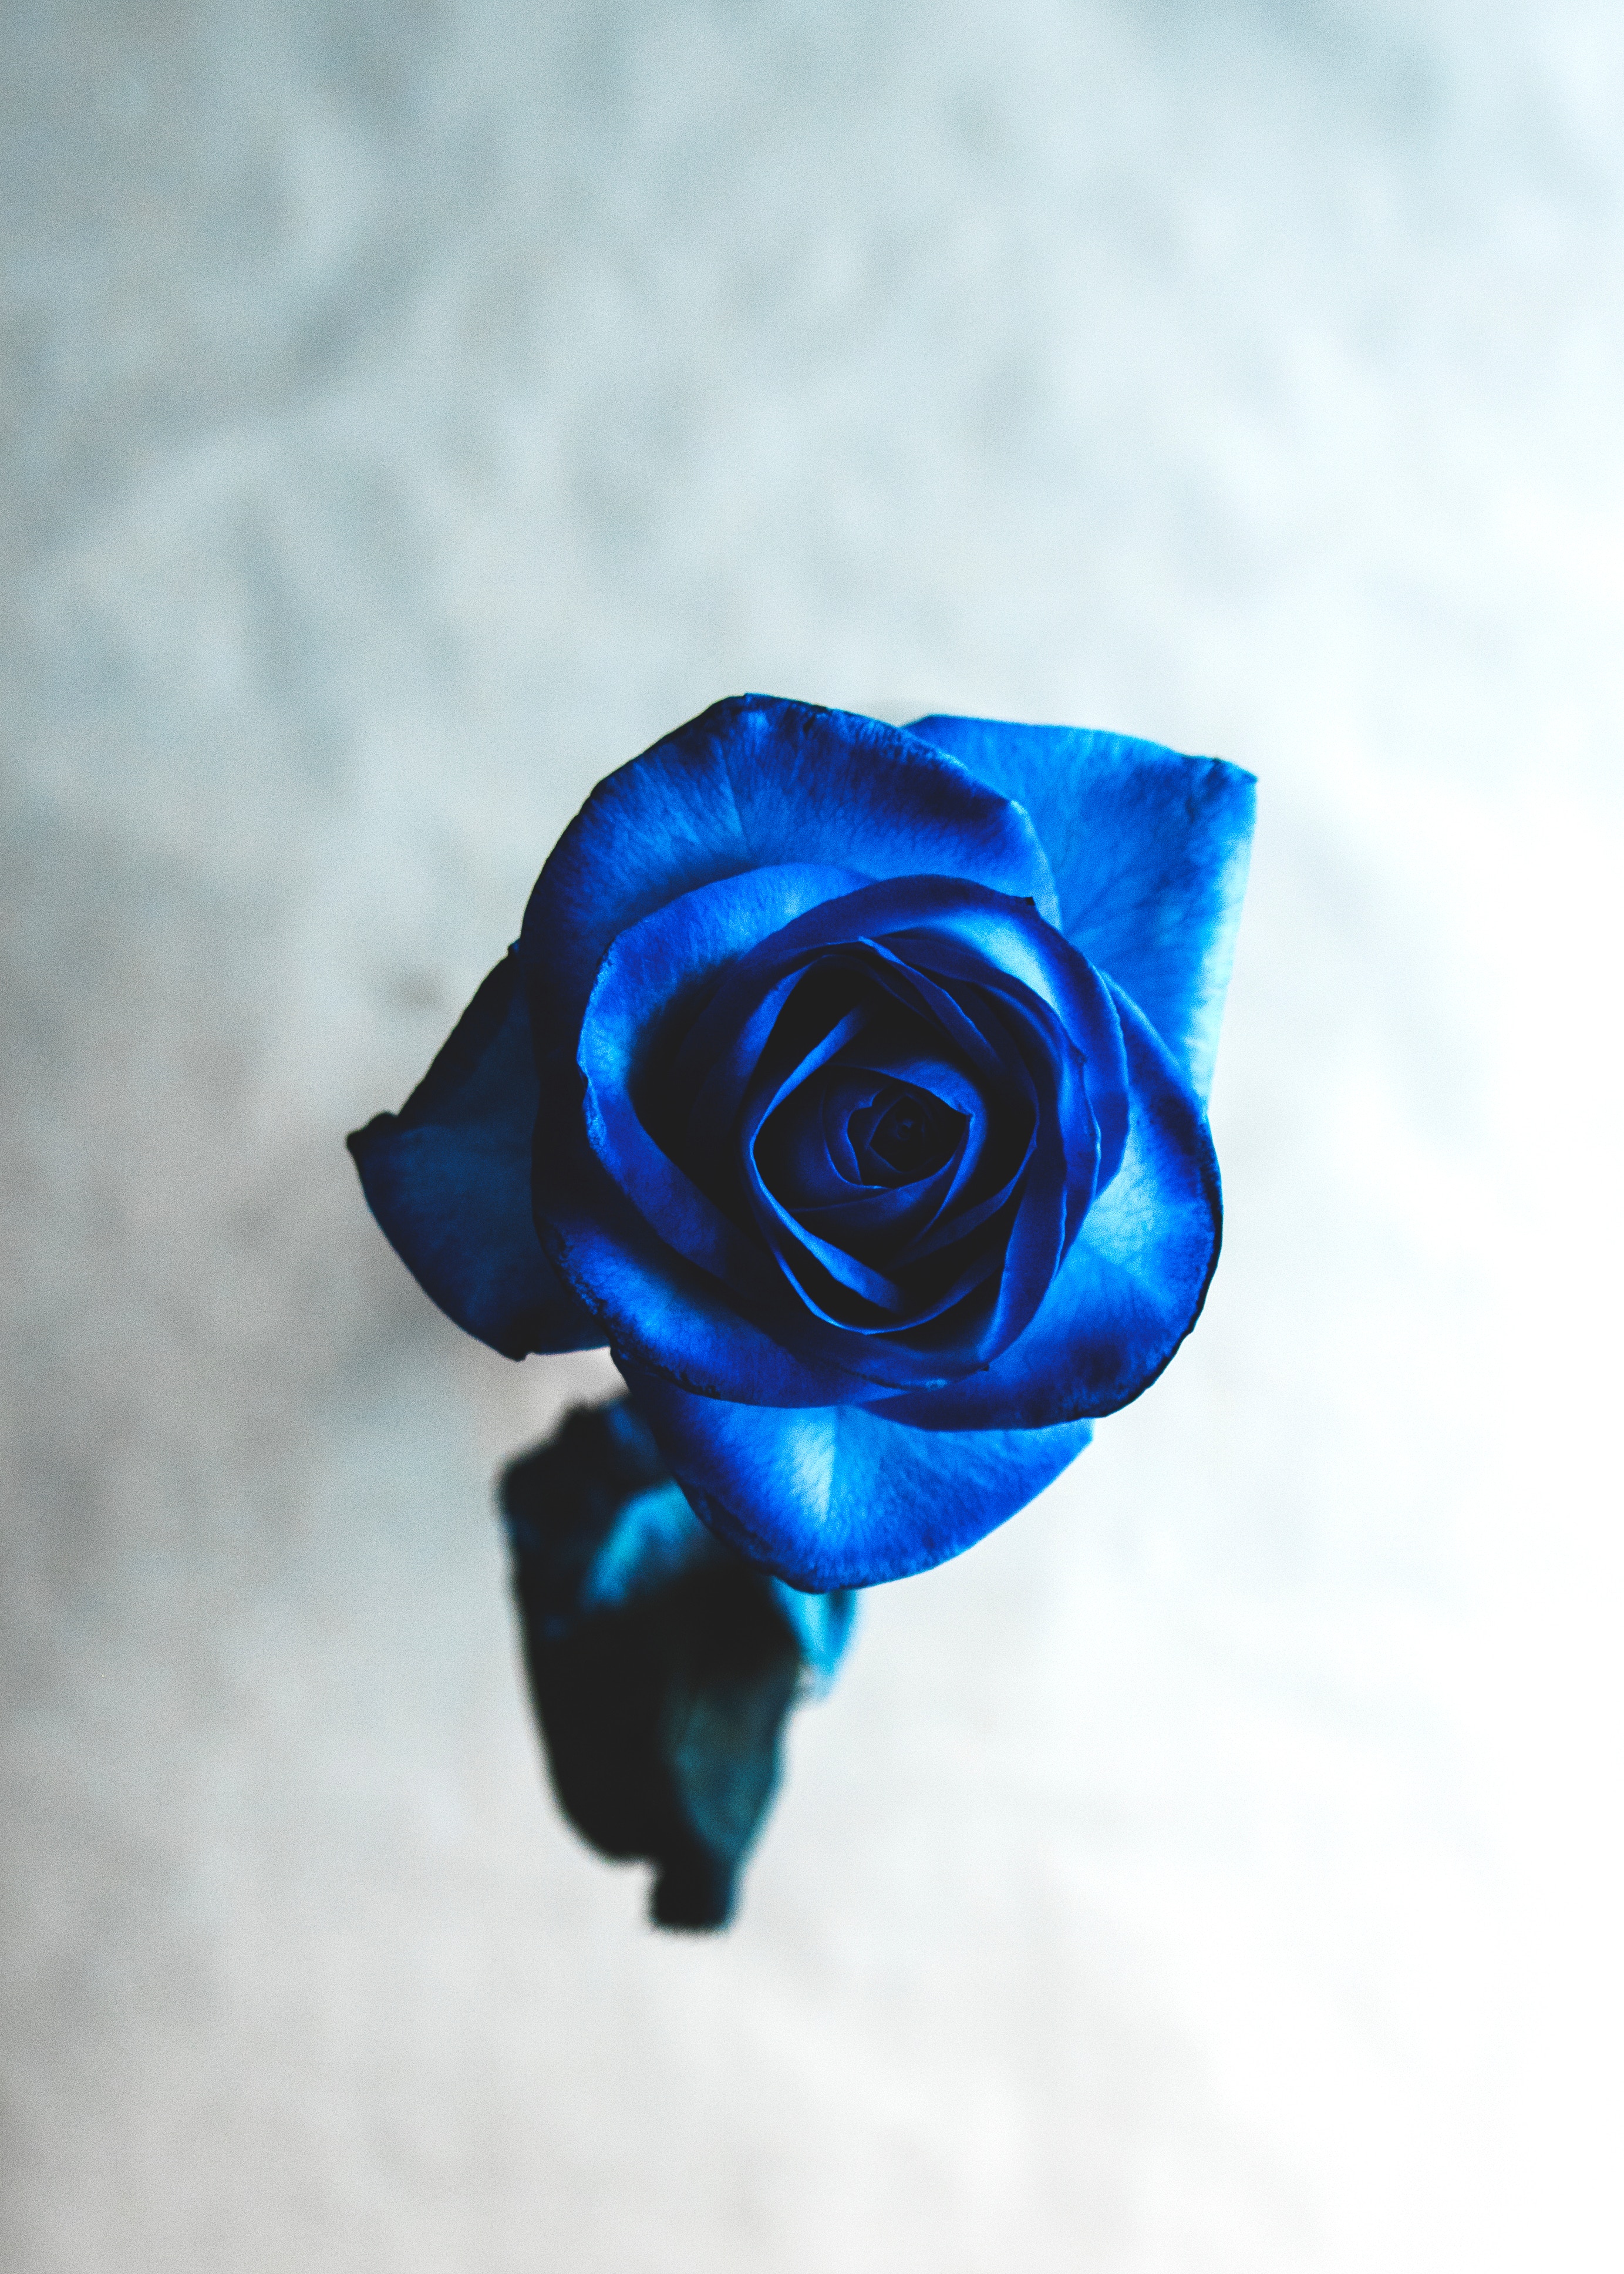 rose flower, flowers, blue, flower, rose, bud, blur, smooth images